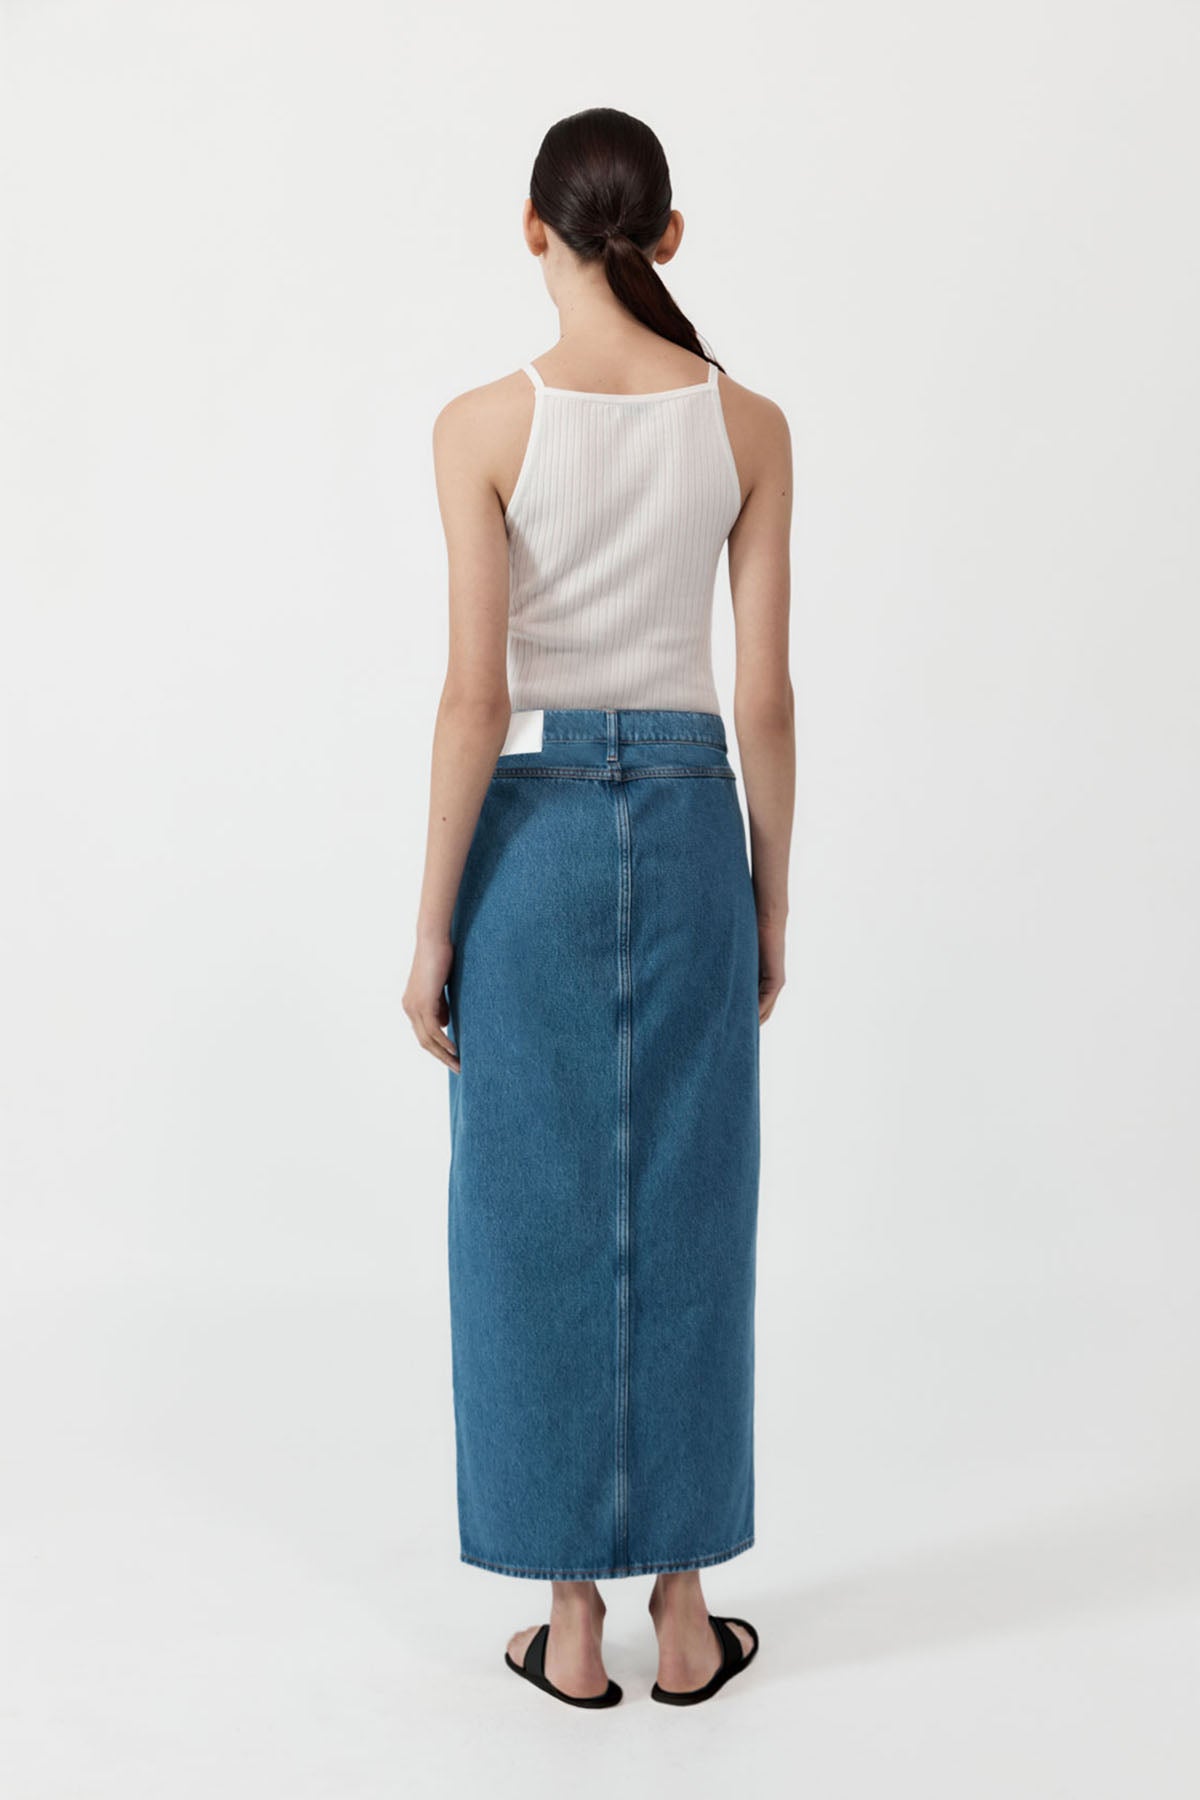 Denim Maxi Skirt - Denim Blue